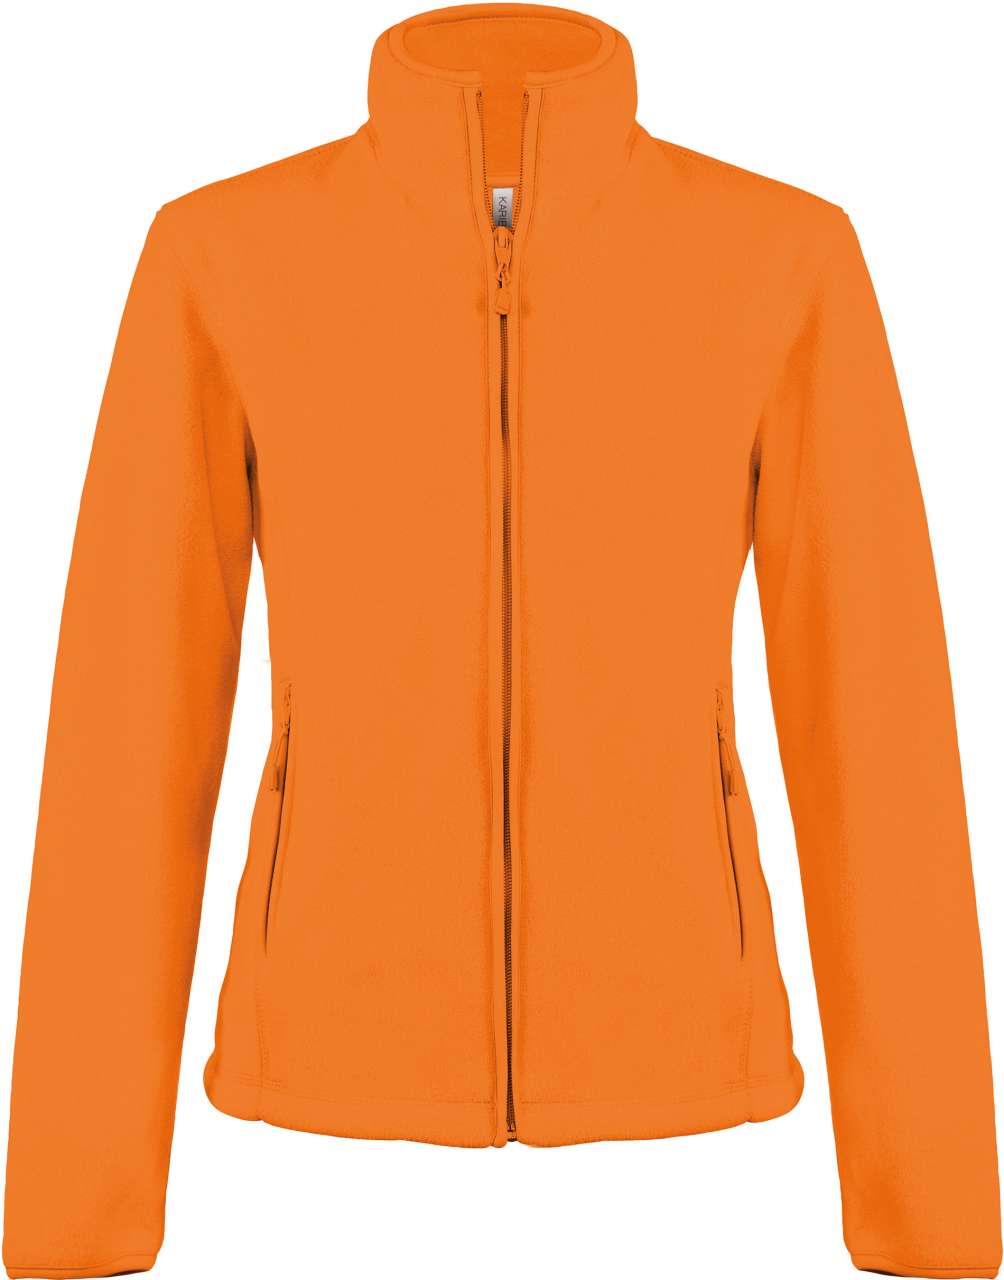 Hanorac orange dama Maureen 100% fleece anti-scamosare 280 g/mp, buzunare laterale, fermoar KA907